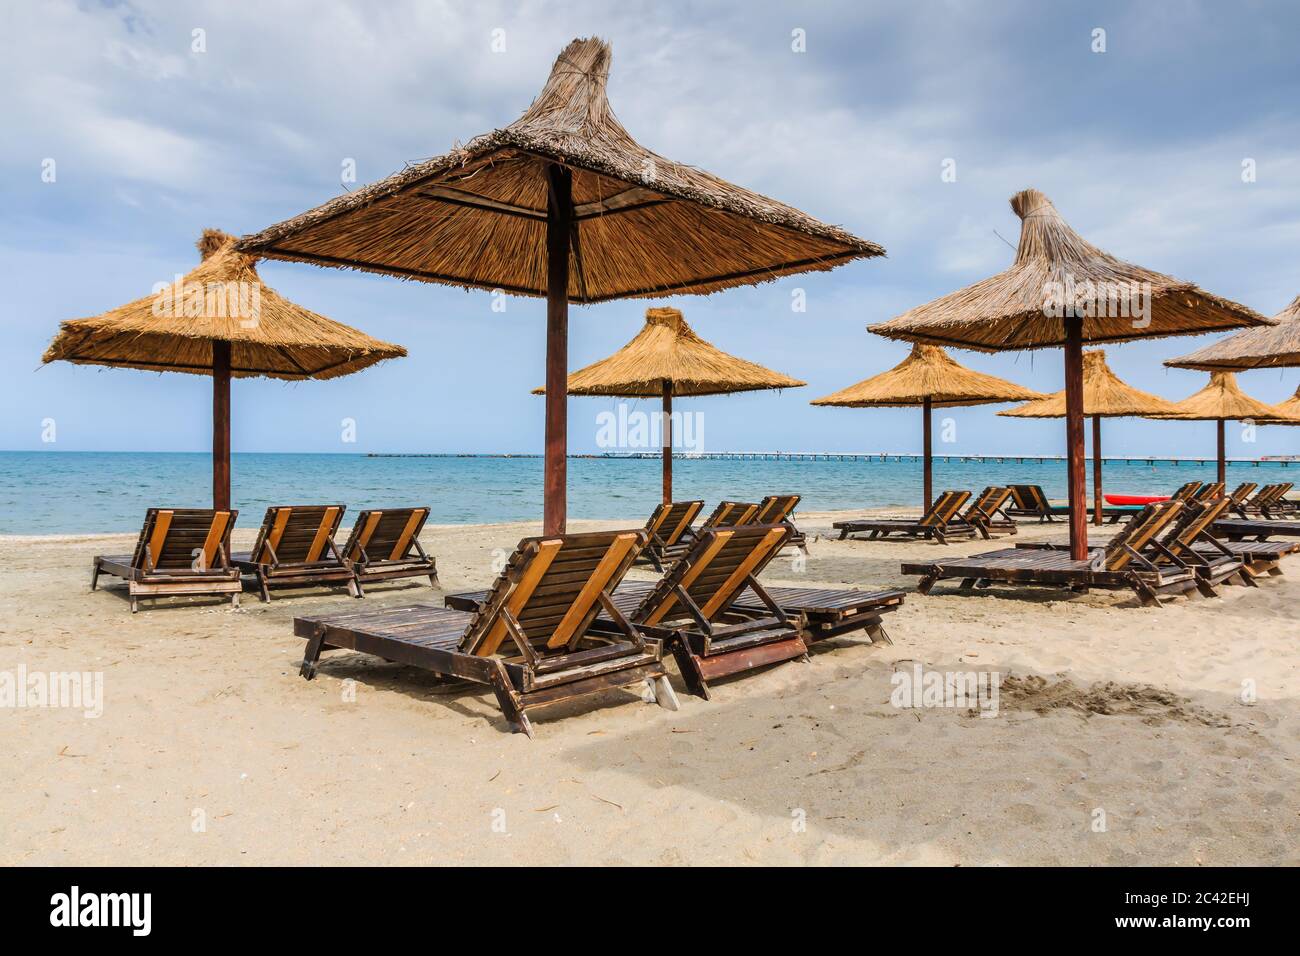 Black Sea, Romania. Straw umbrellas on the beach in Mamaia. Stock Photo